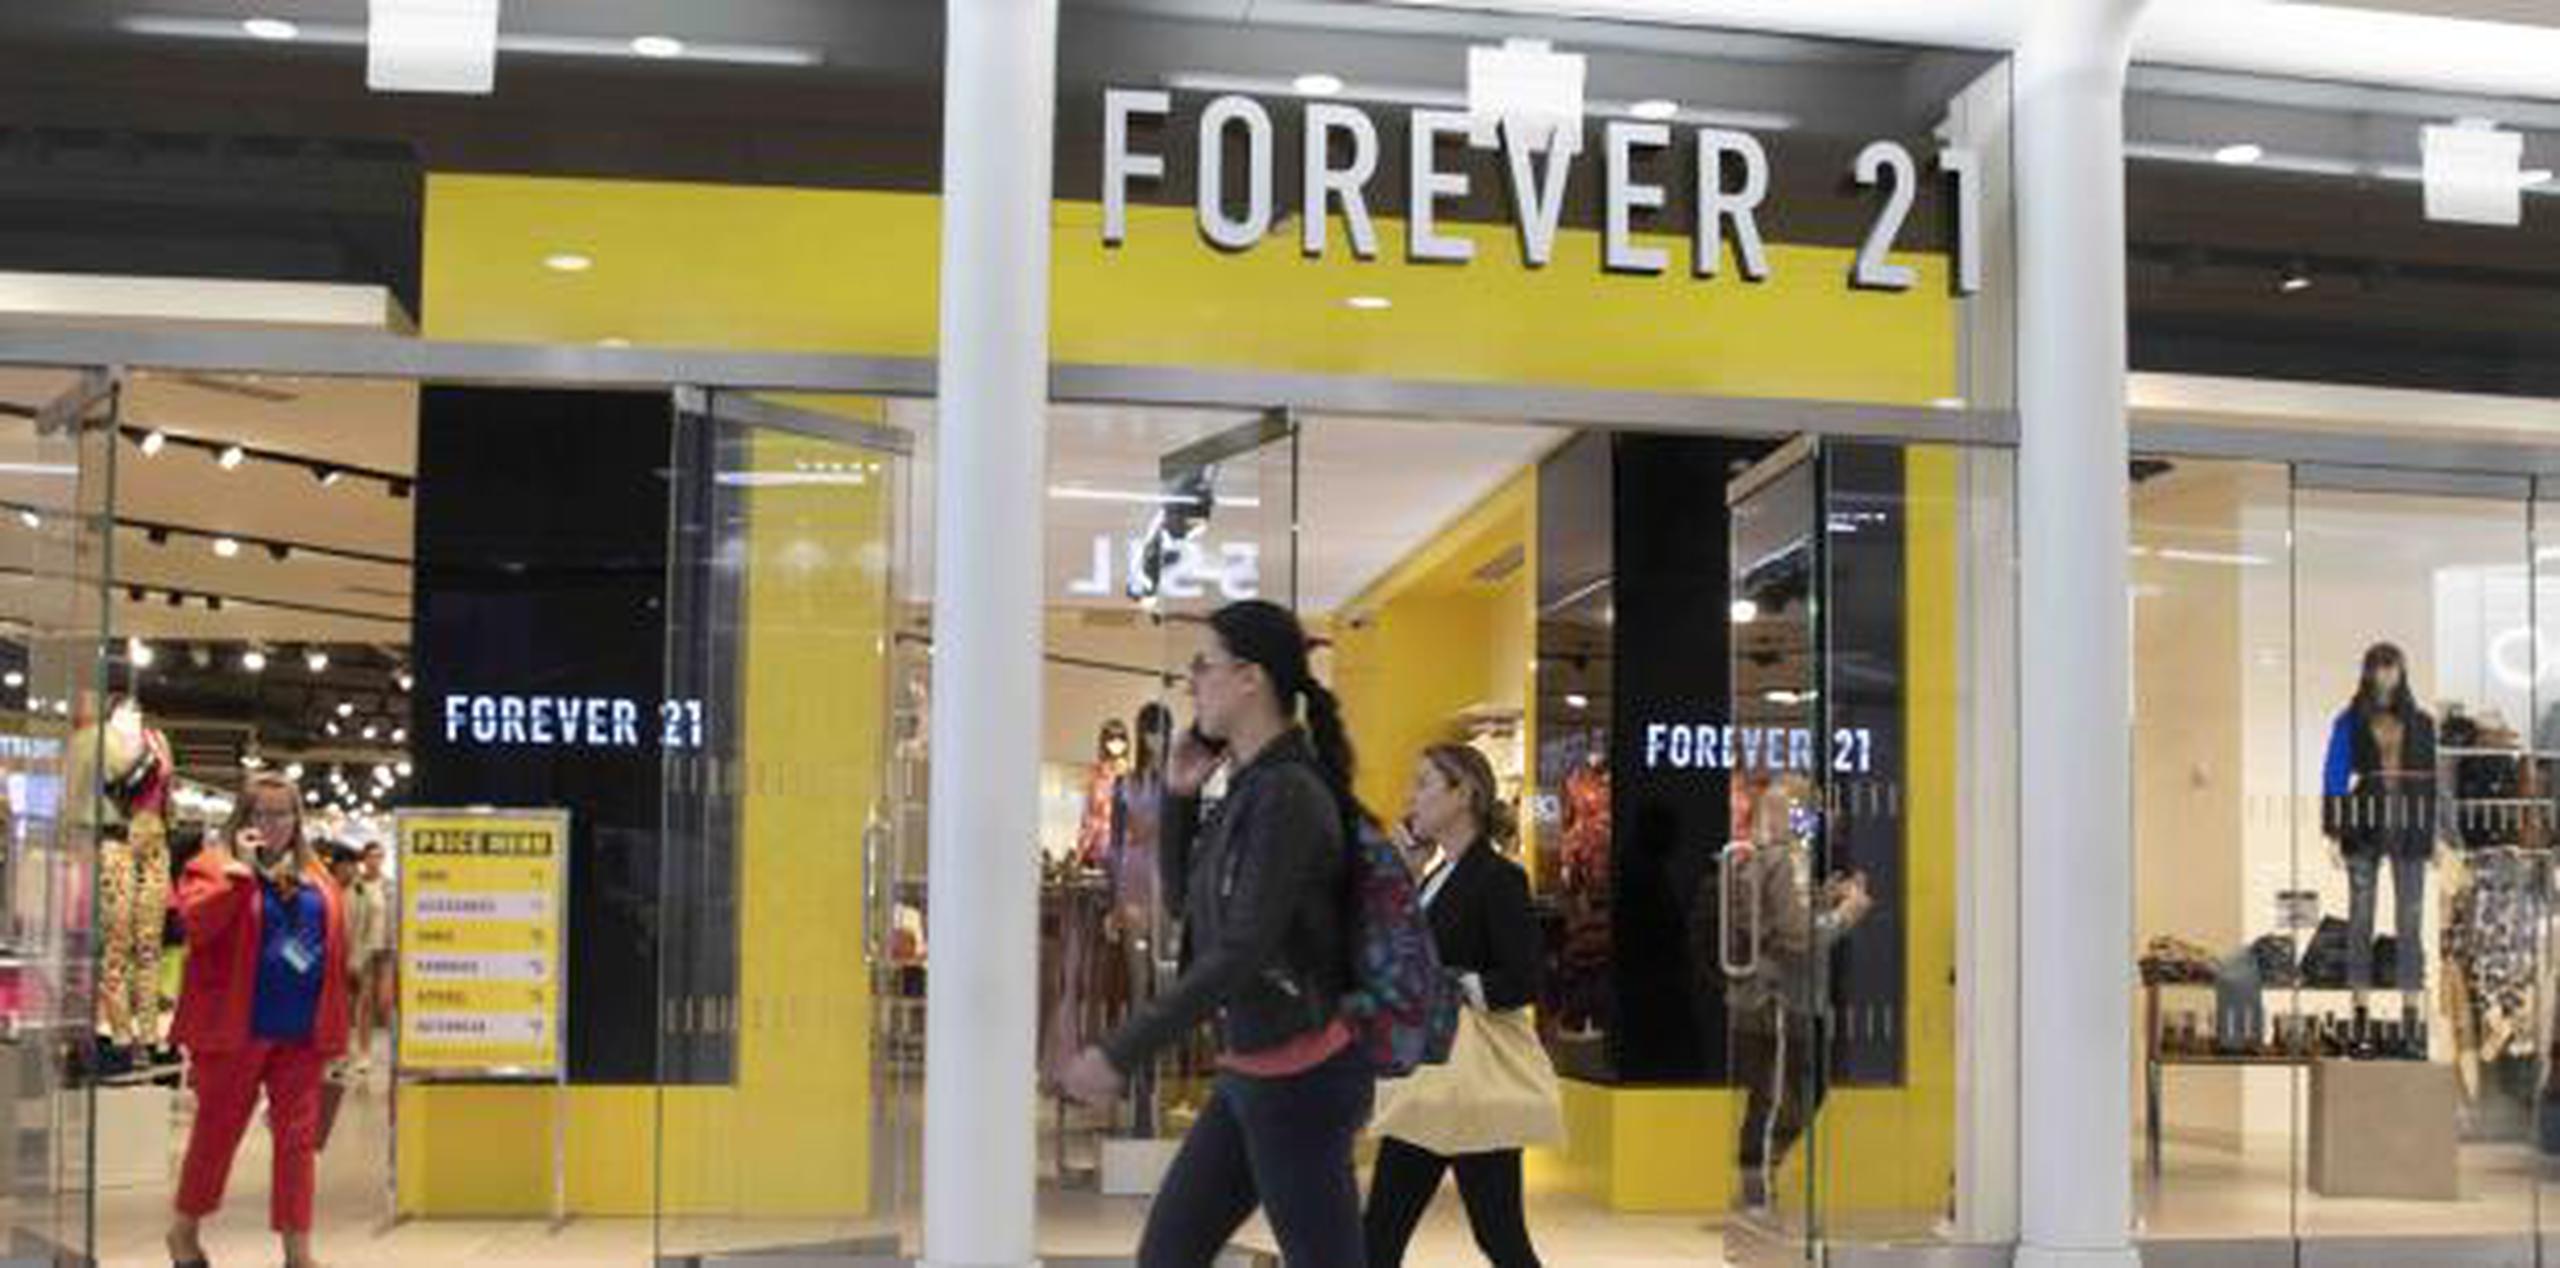 Forever 21 cerrará aproximadamente 350 establecimientos a nivel internacional, incluyendo hasta 178 en Estados Unidos. (AP / Mark Lennihan)